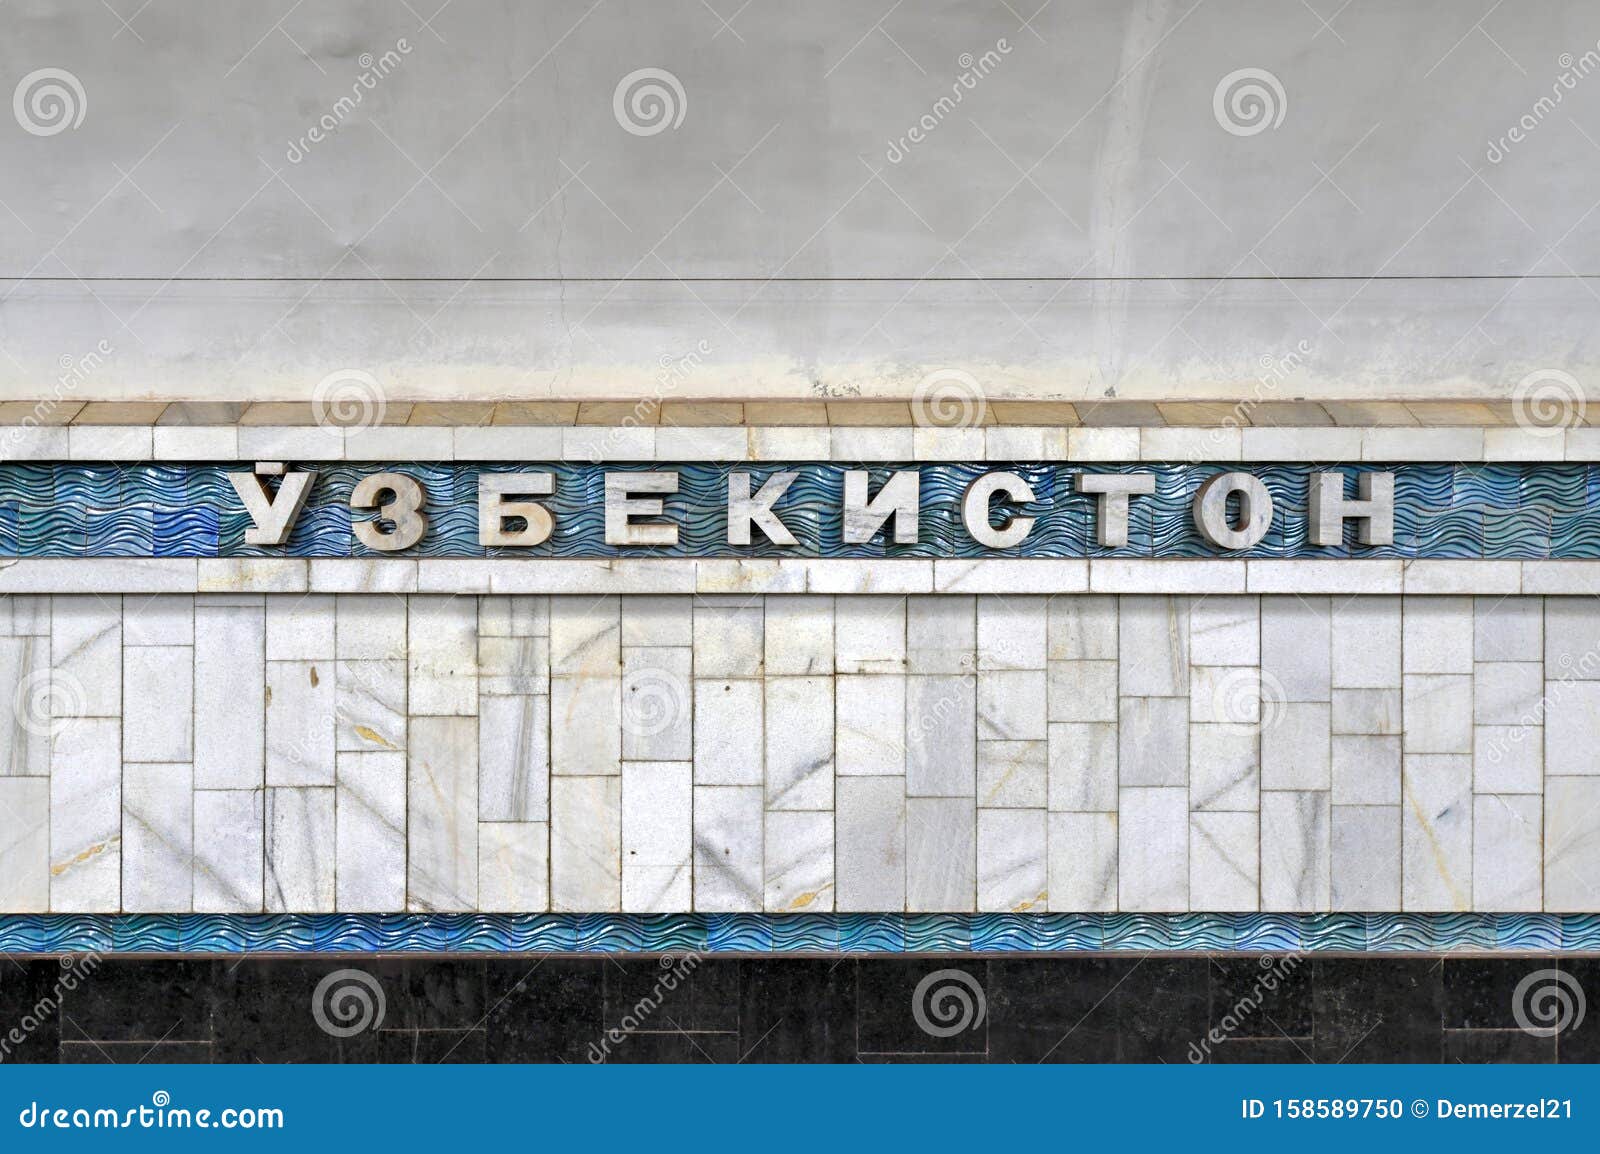 ozbekiston metro - tashkent, uzbekistan